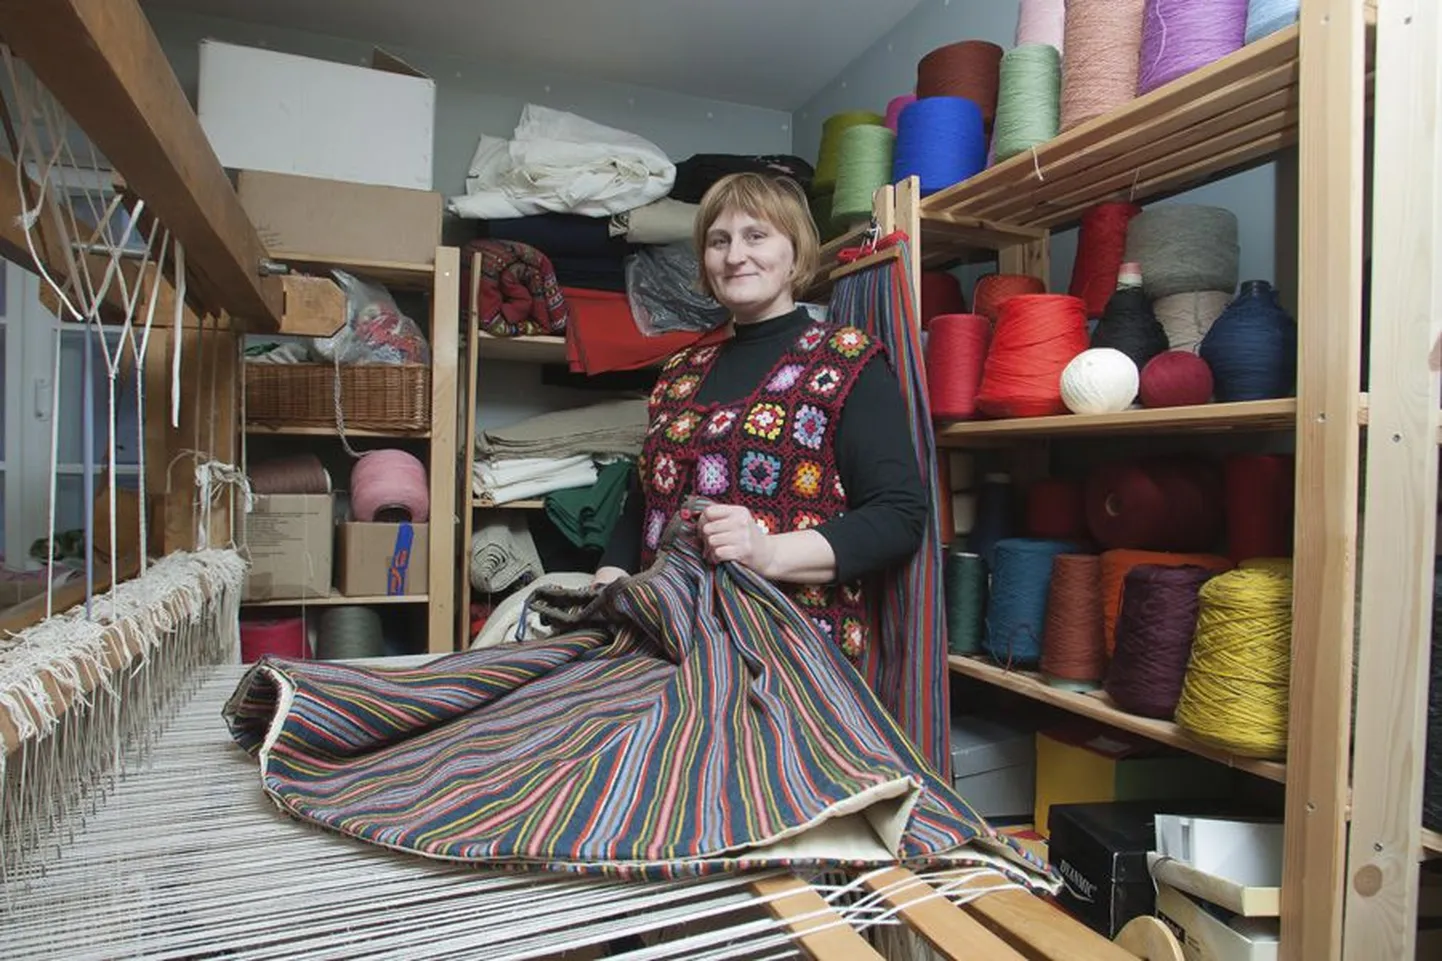 Riina Piir on Viljandi käsitöökojas tegutsenud juba 2000. aastate algusest saadik. Ta ütleb, et kui krooni aja lõpul tunti suurt huvi kõikvõimalike kudumite vastu, siis praegu elab käsitöökoda ära eelkõige rahvarõivaste tegemisest.